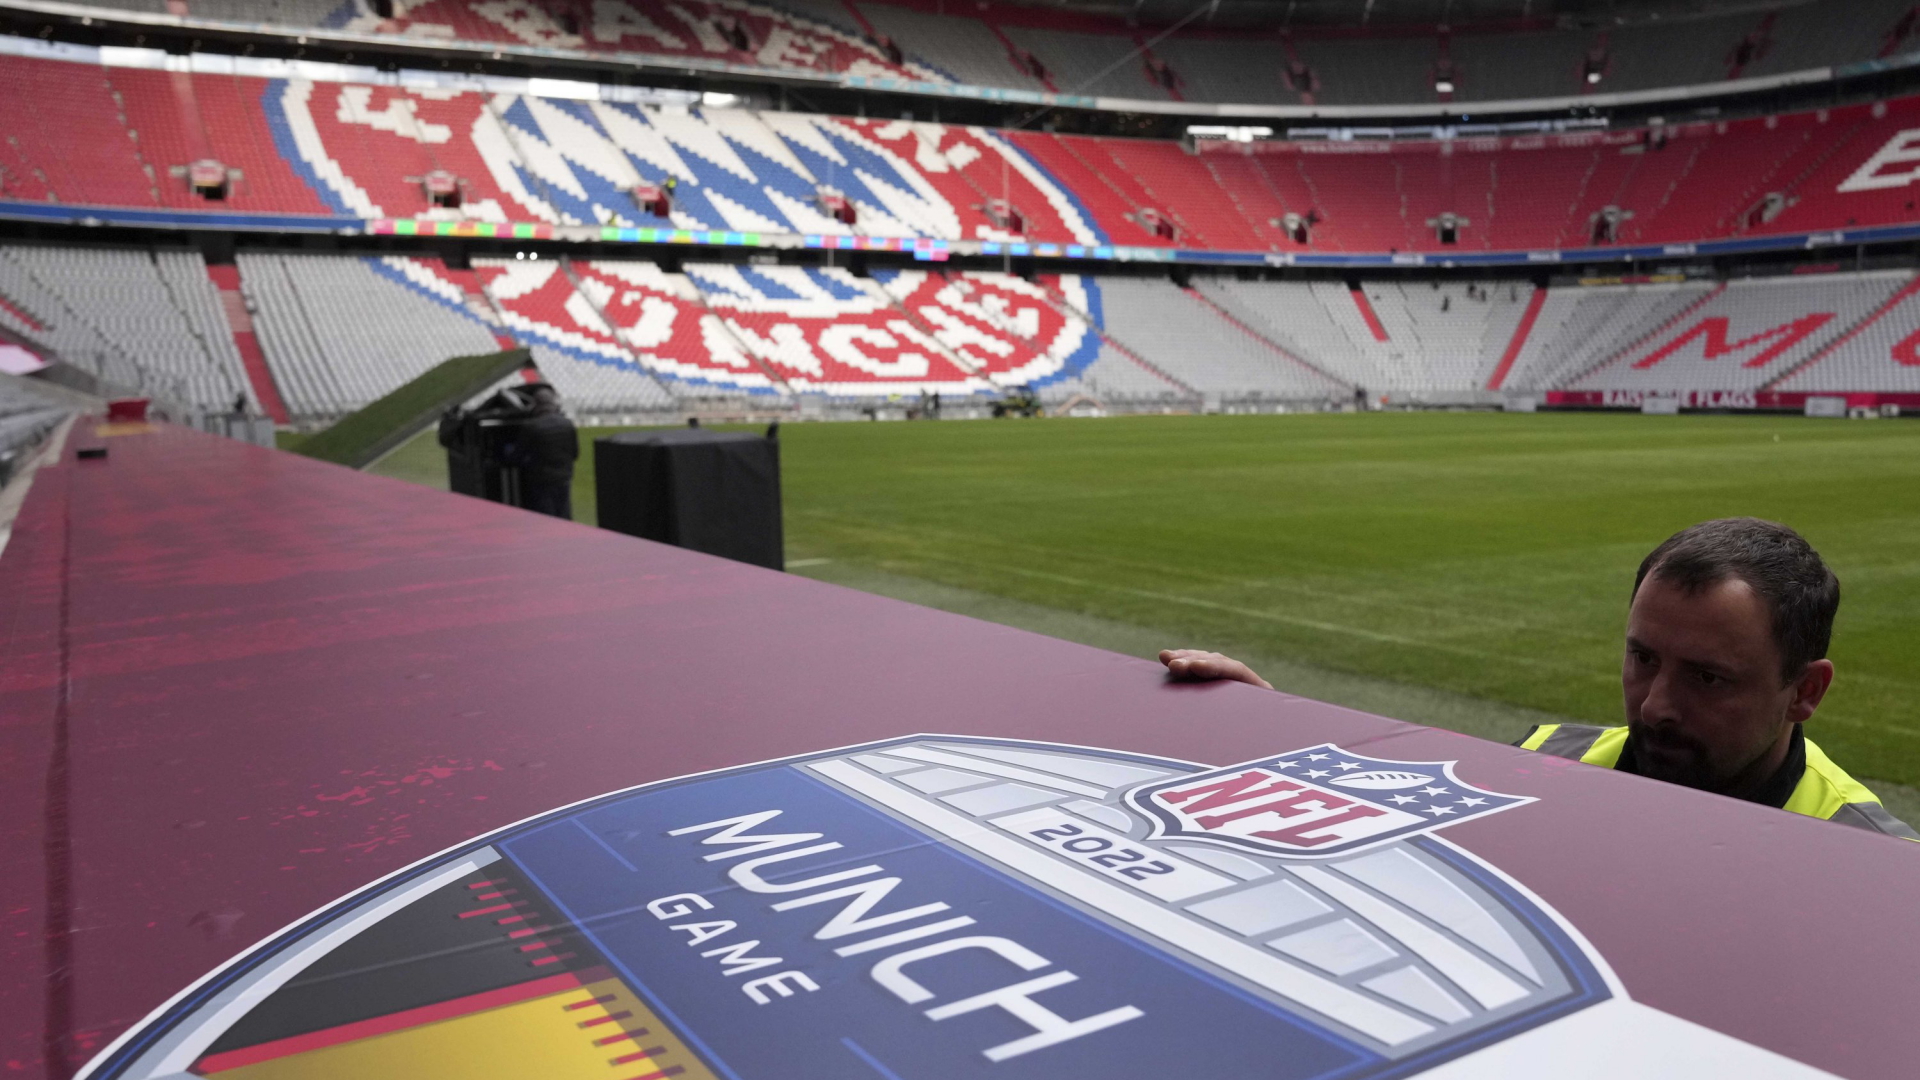 NFL-Premiere in München: Die Marketing-Maschine läuft